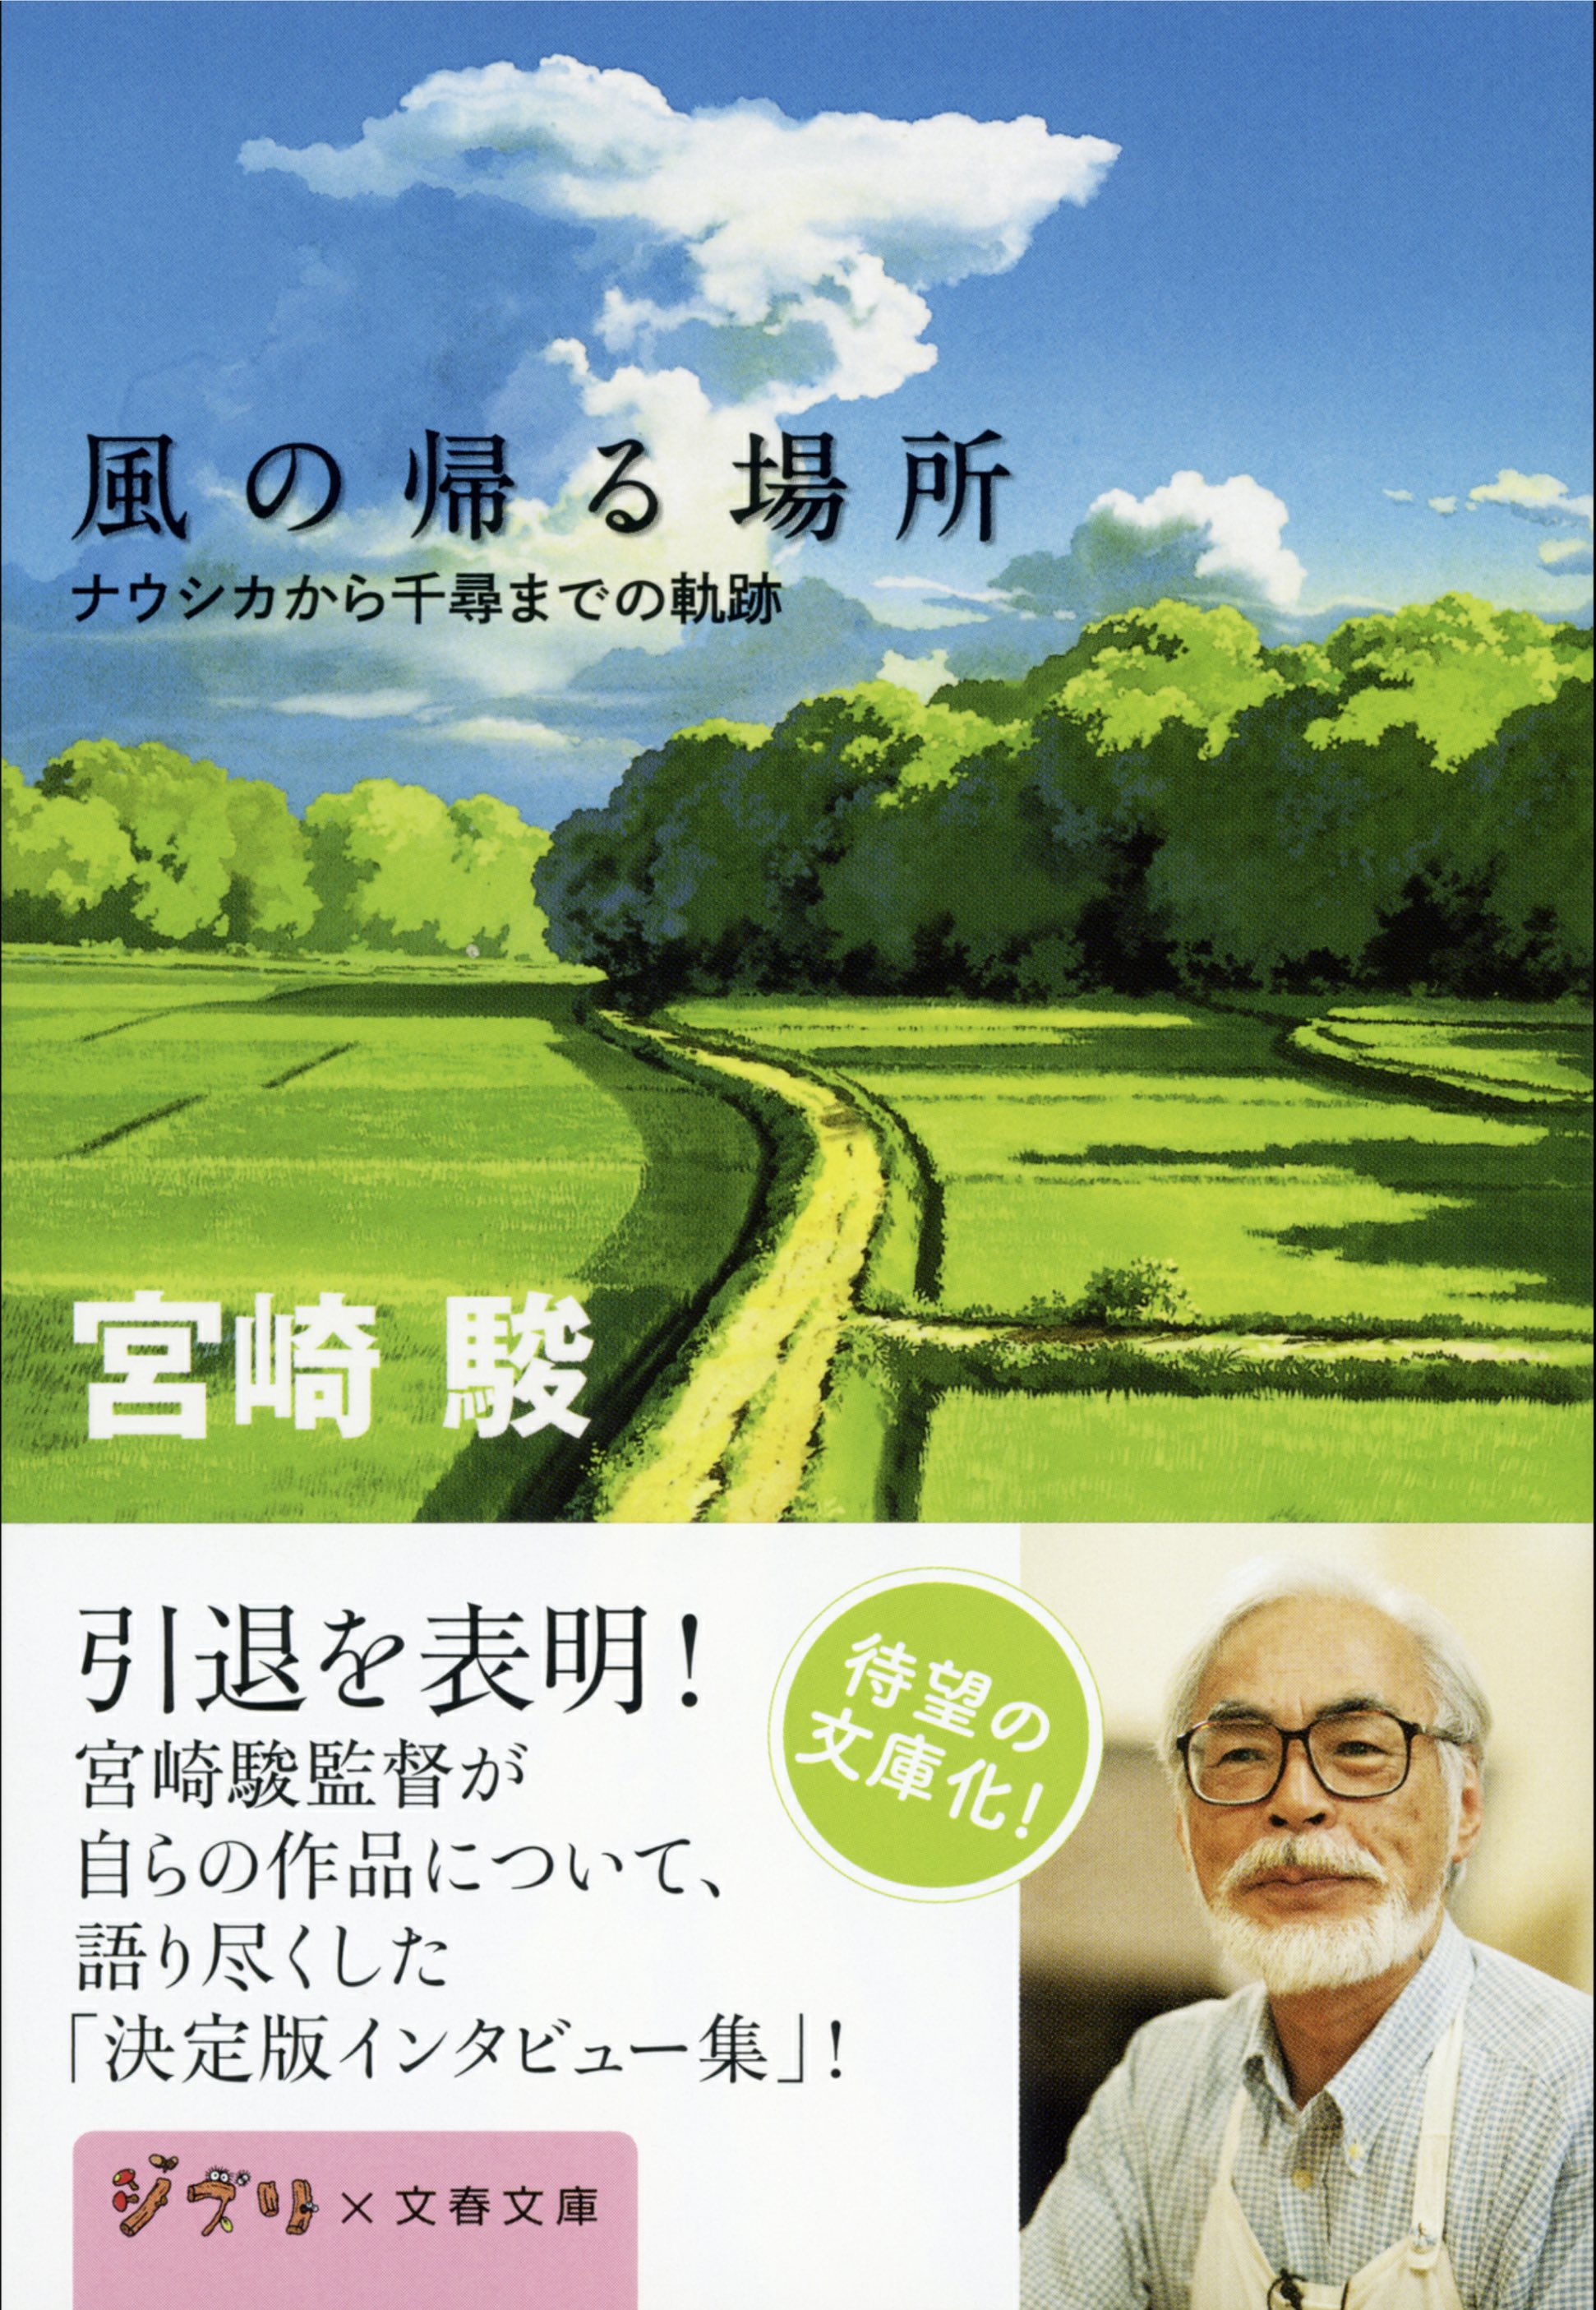 Livre : Miyazaki